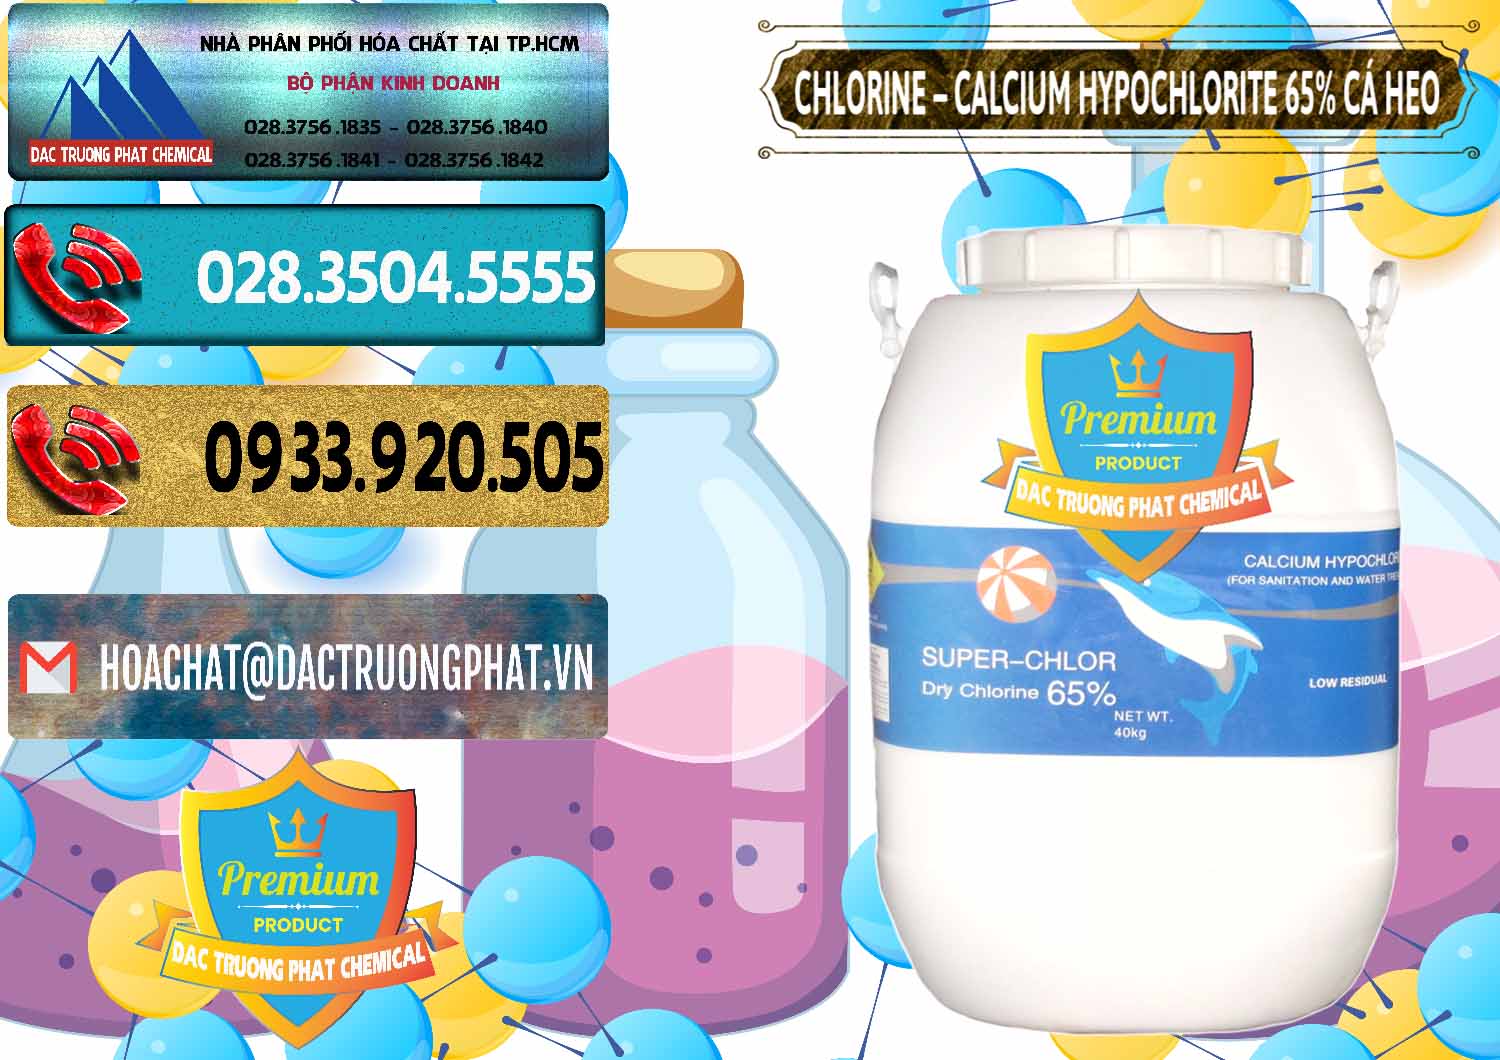 Công ty chuyên phân phối & bán Clorin - Chlorine Cá Heo 65% Trung Quốc China - 0053 - Cty phân phối - cung cấp hóa chất tại TP.HCM - hoachatdetnhuom.com